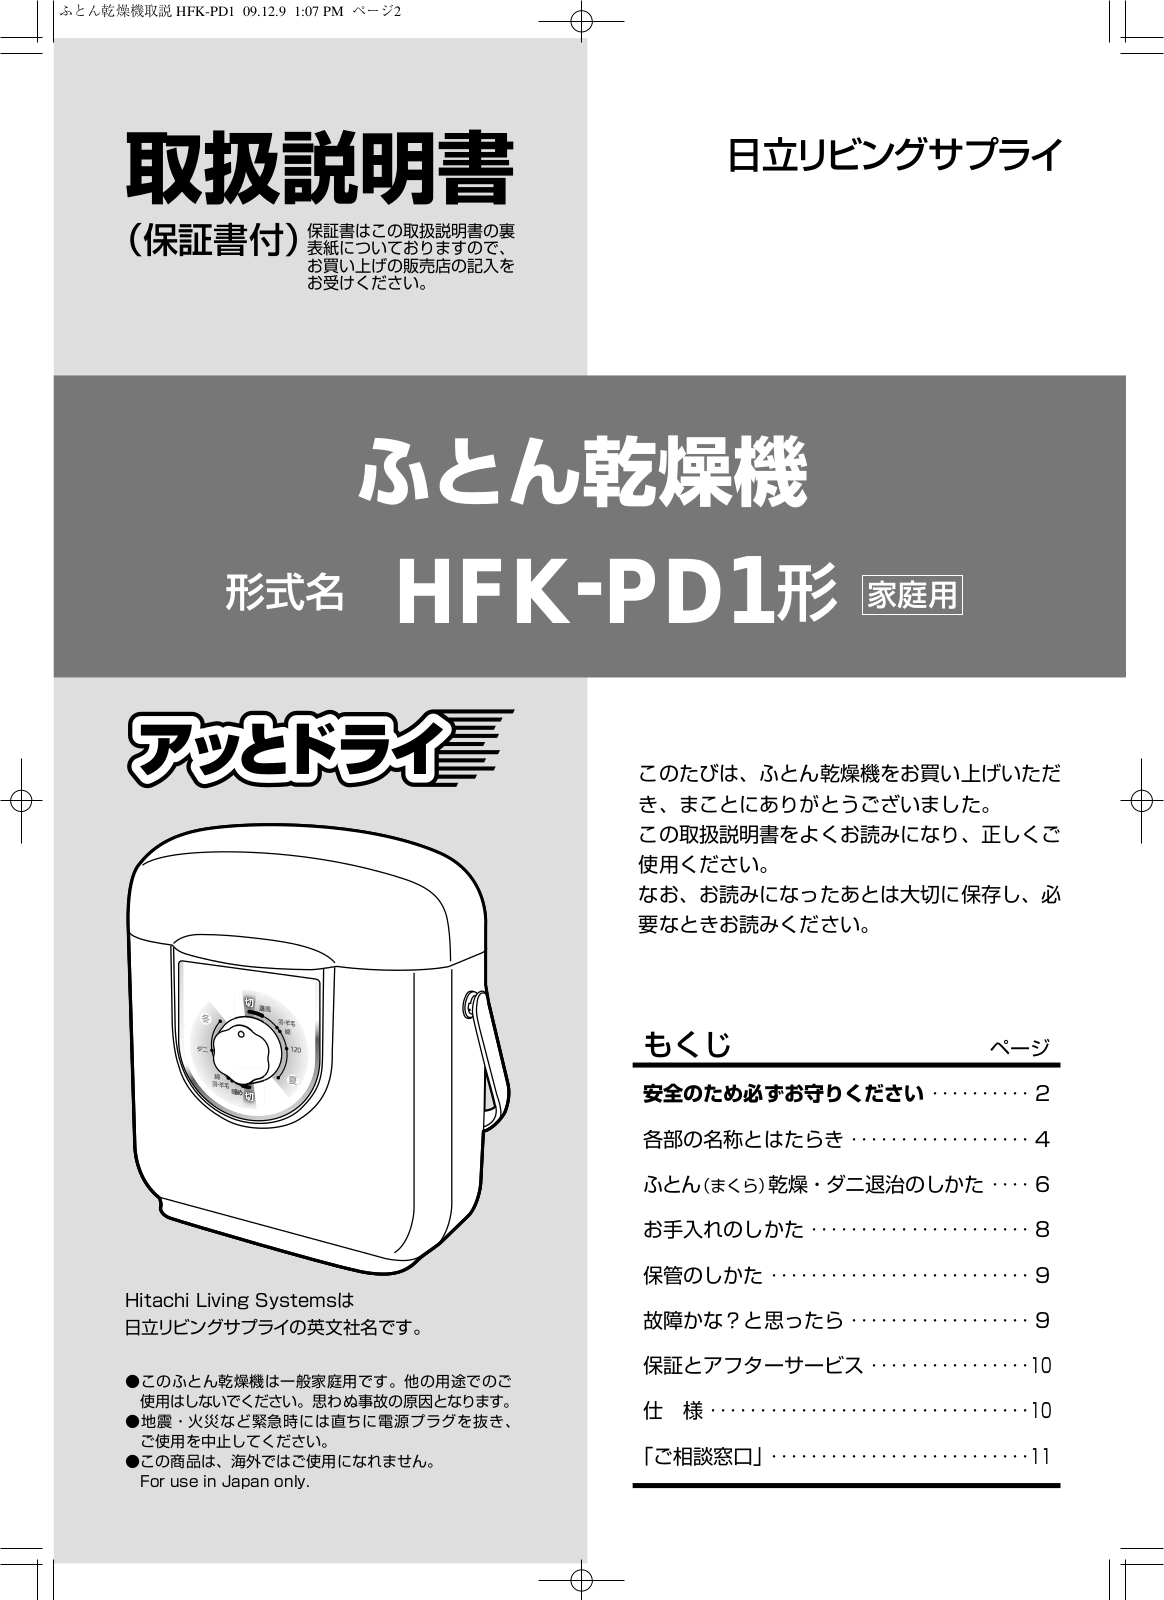 Hitachi HFK-PD1 User guide